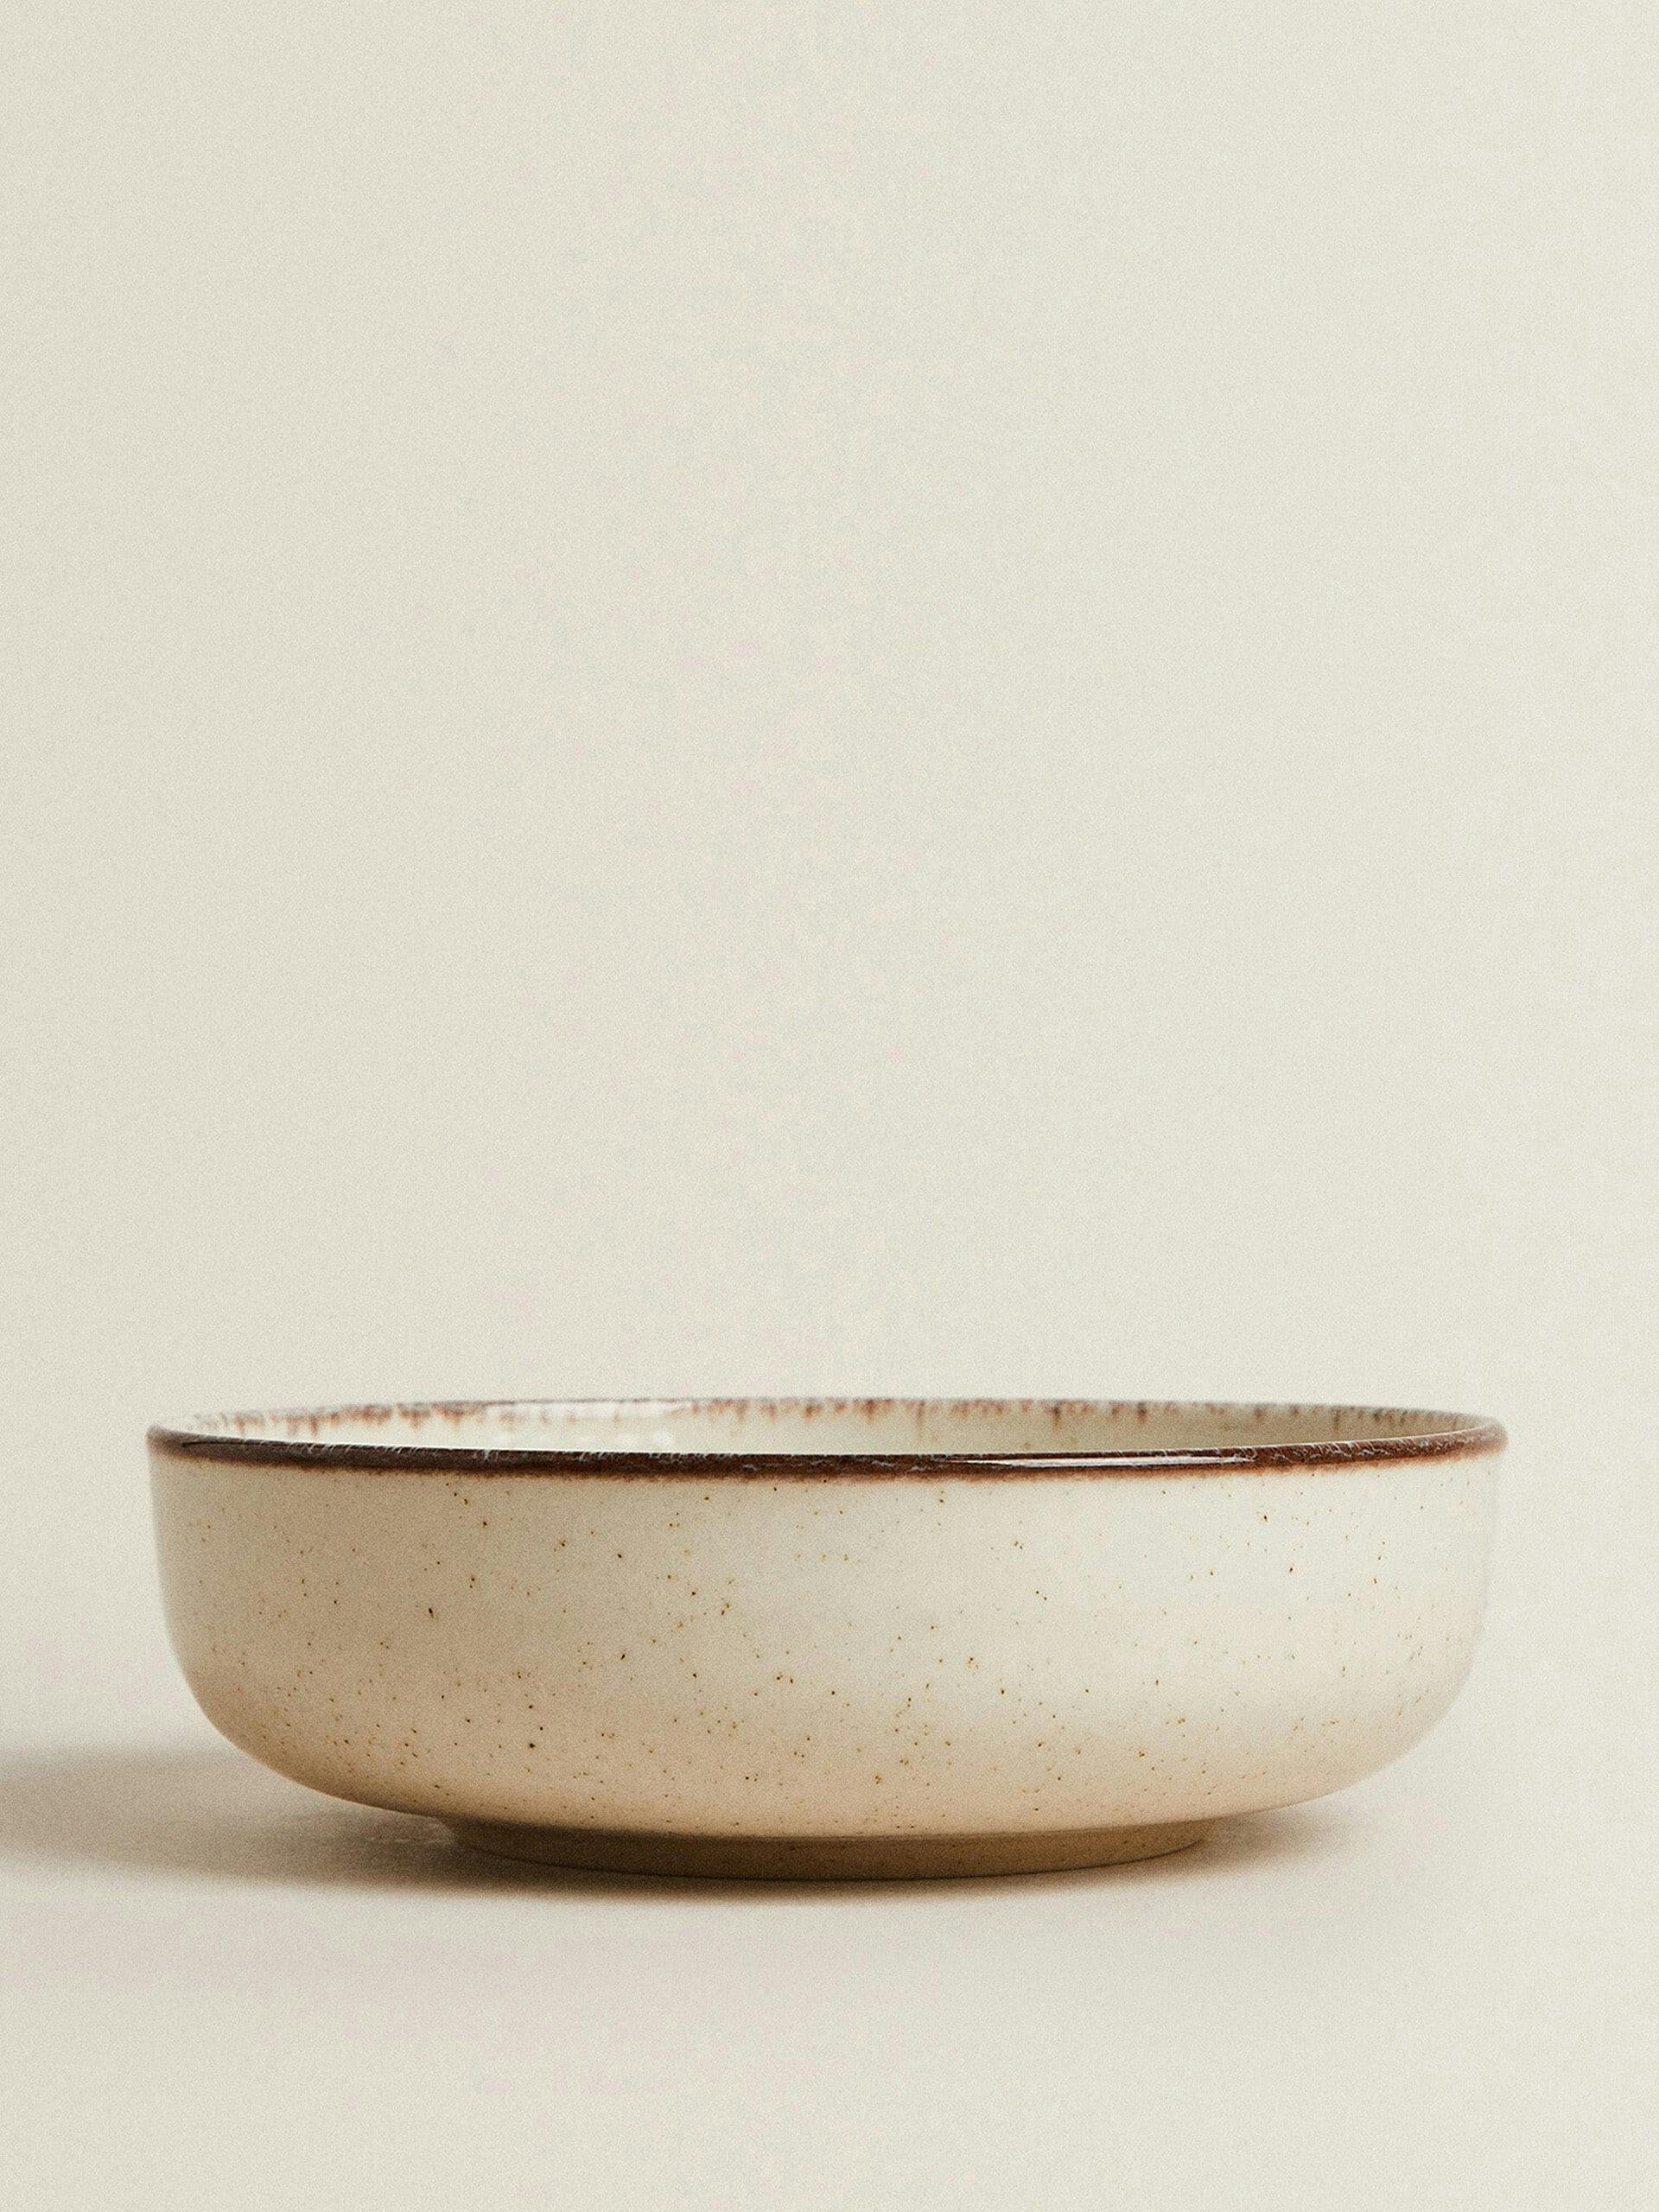 Porcelain soup plate with antique finish rim